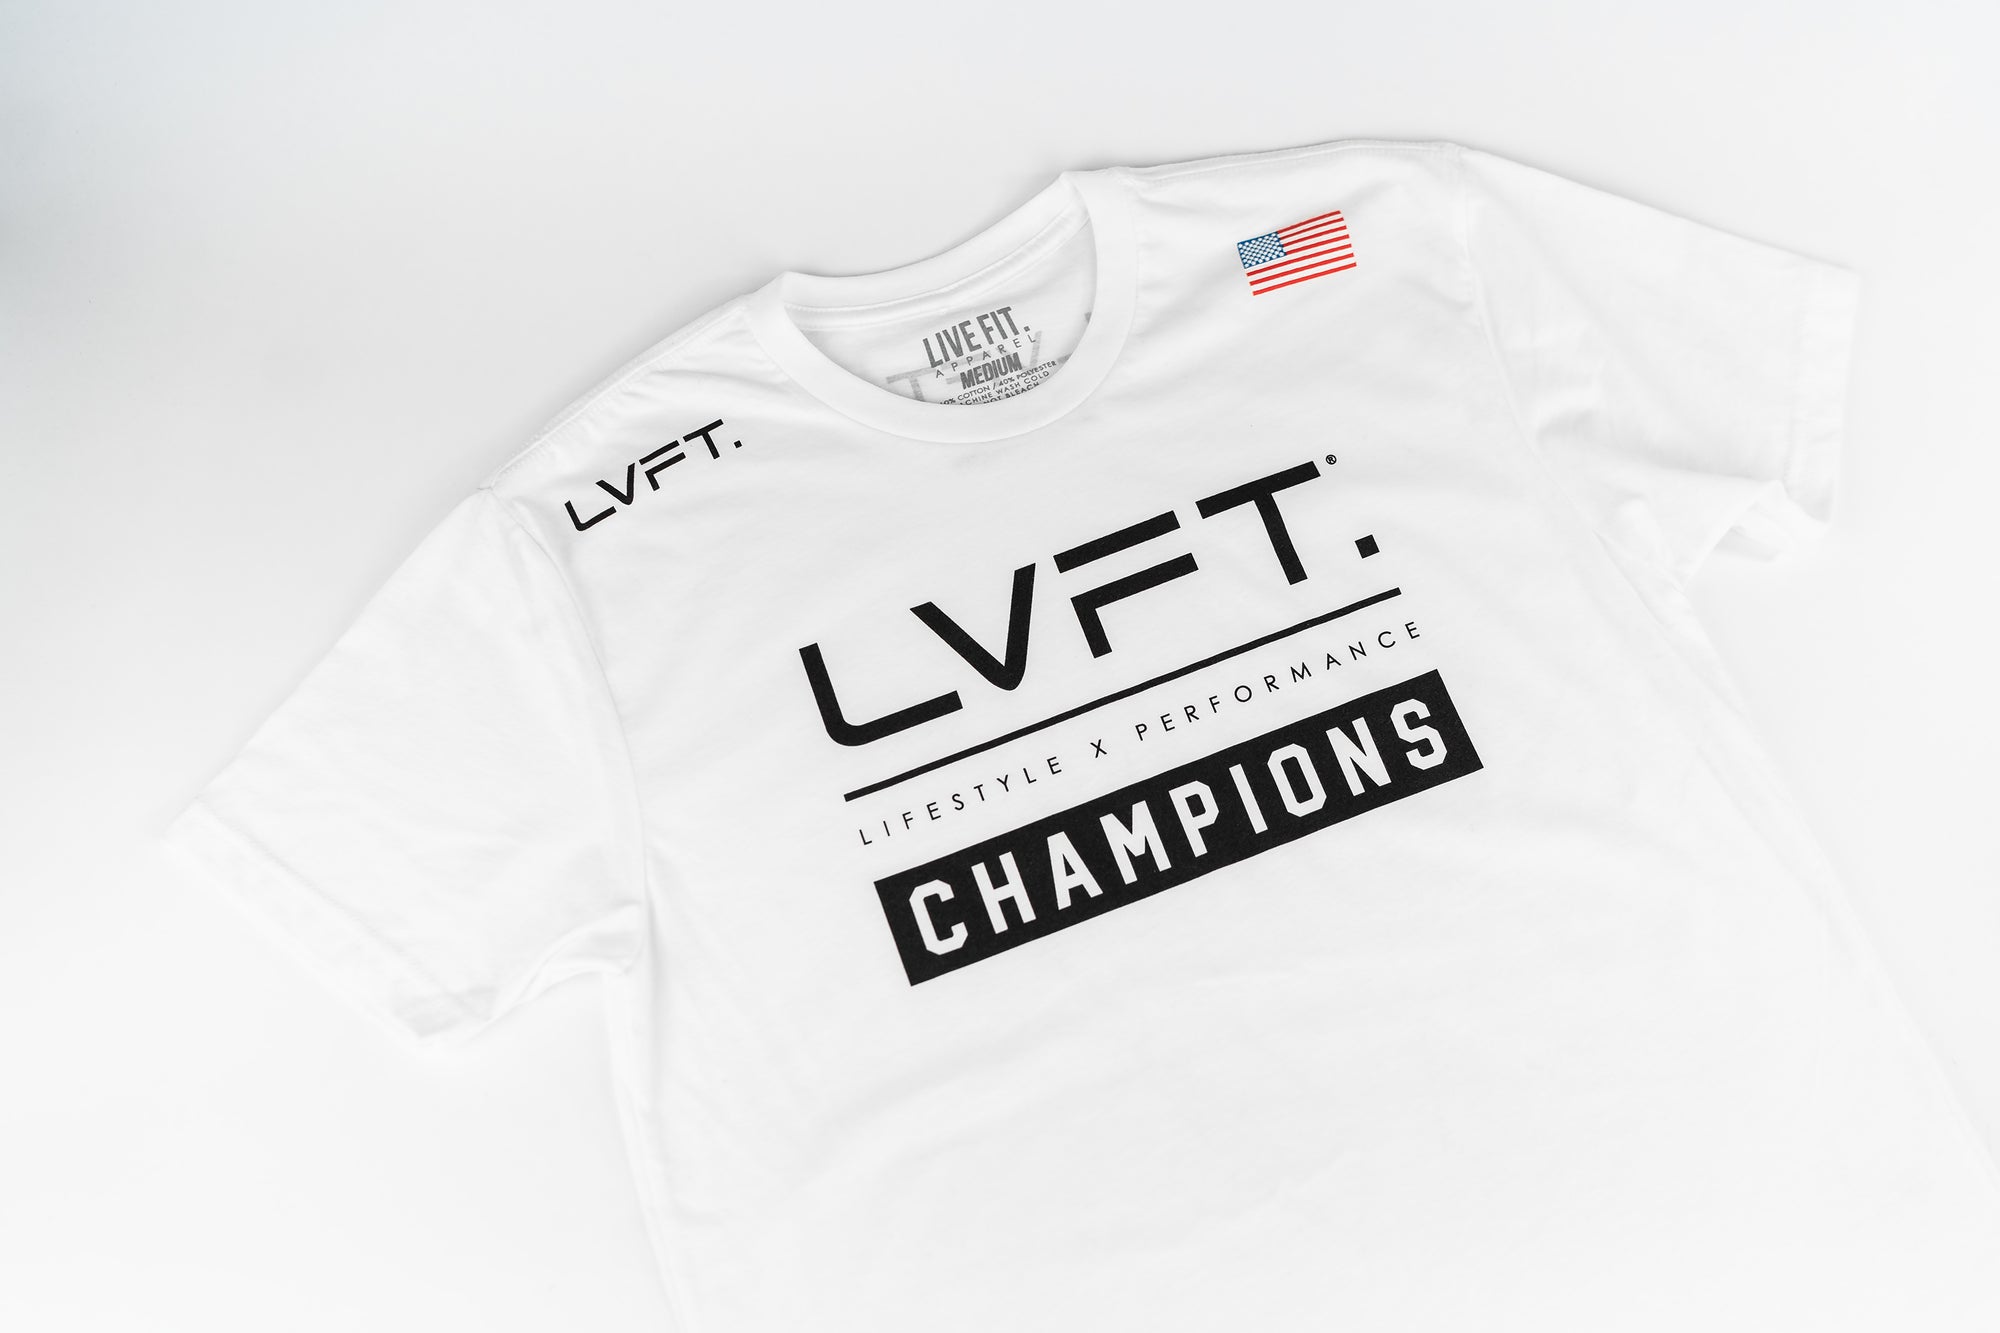 LVFT x Cortez Fight Team Tee - White